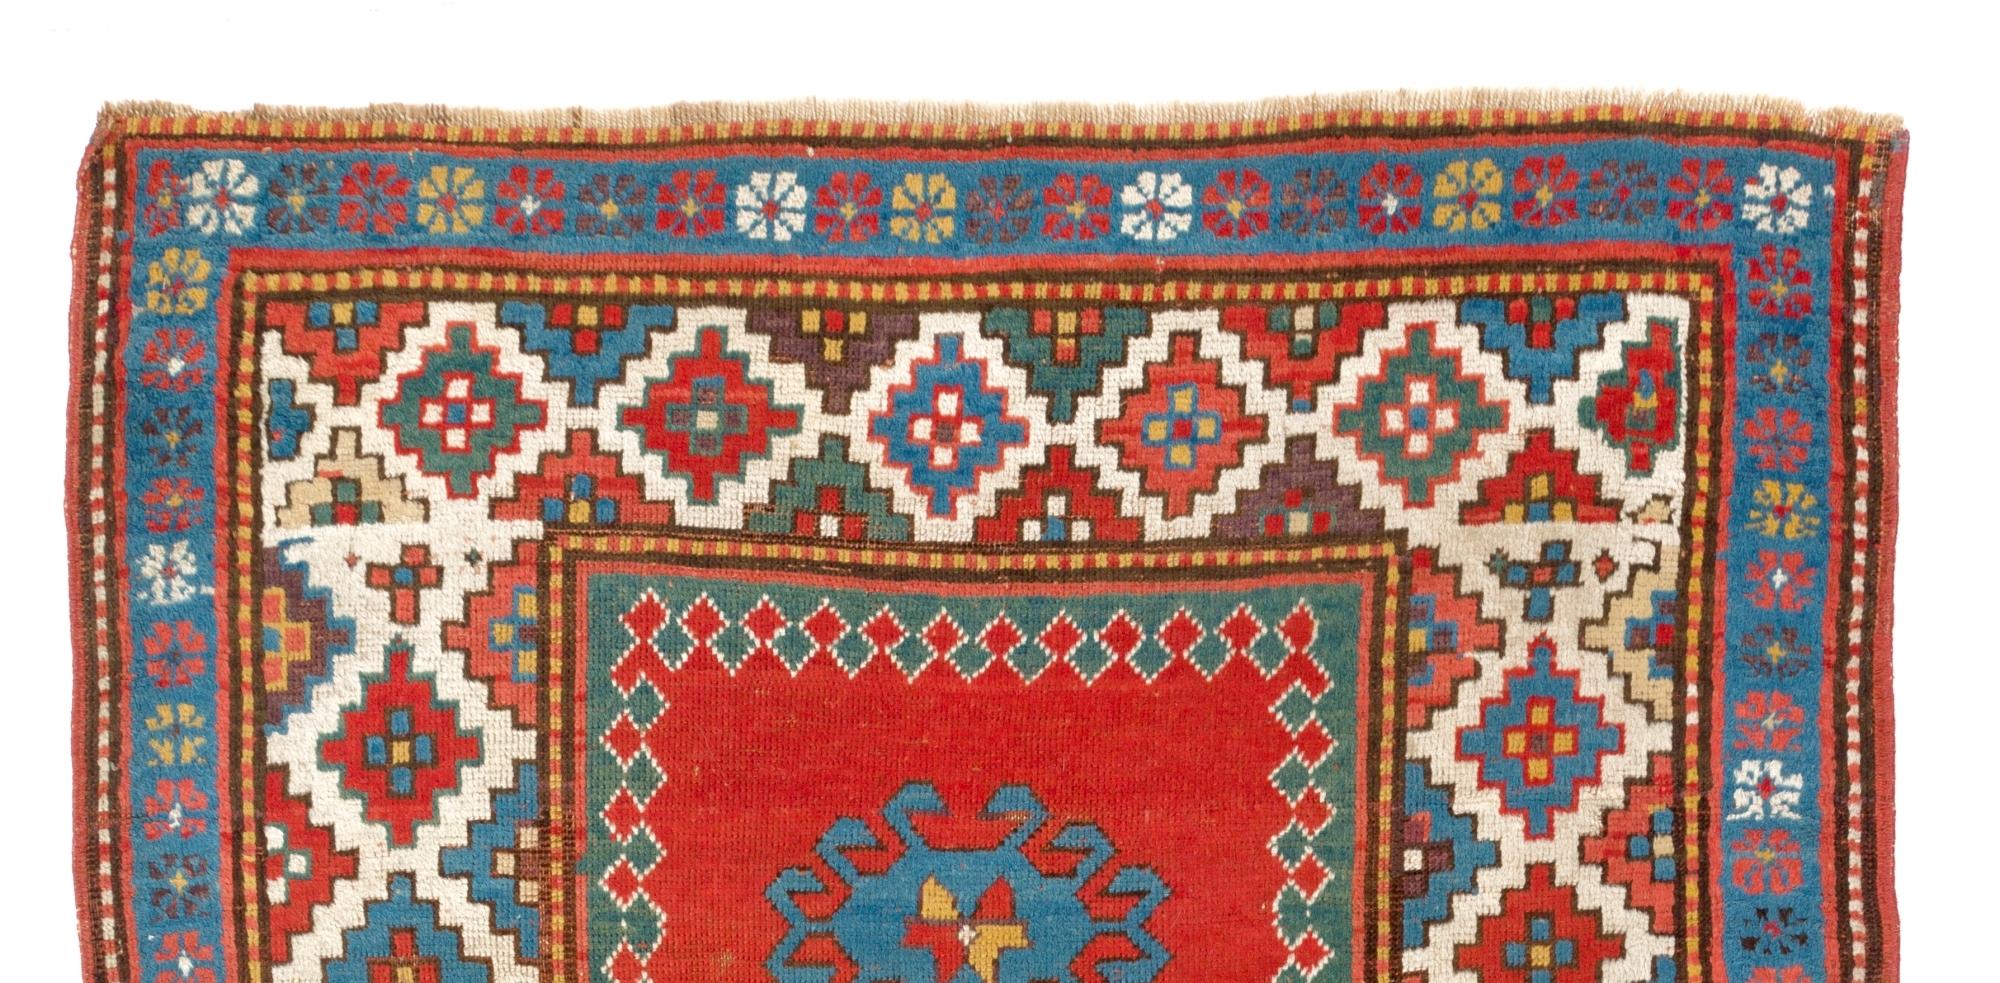 Antiker kaukasischer Bordjalou-Kazak-Teppich, um 1880. Maße: 4 x 5,8 ft.
Sehr guter Zustand, alles original. 
100% Wolle, natürliche Farbstoffe.